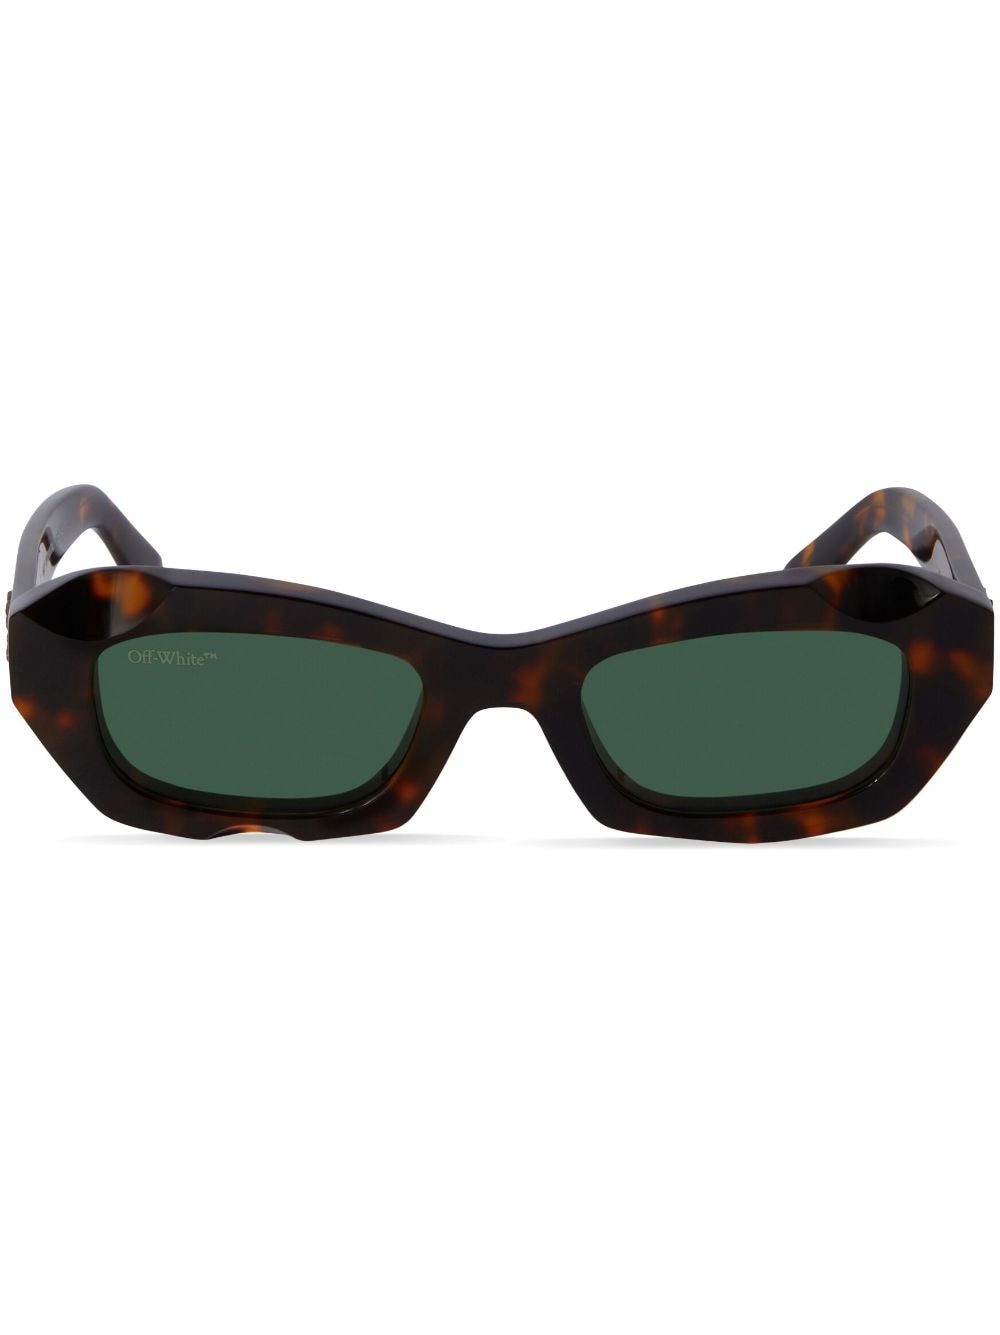 Off-White Venezia tortoiseshell rectangle sunglasses - Brown von Off-White